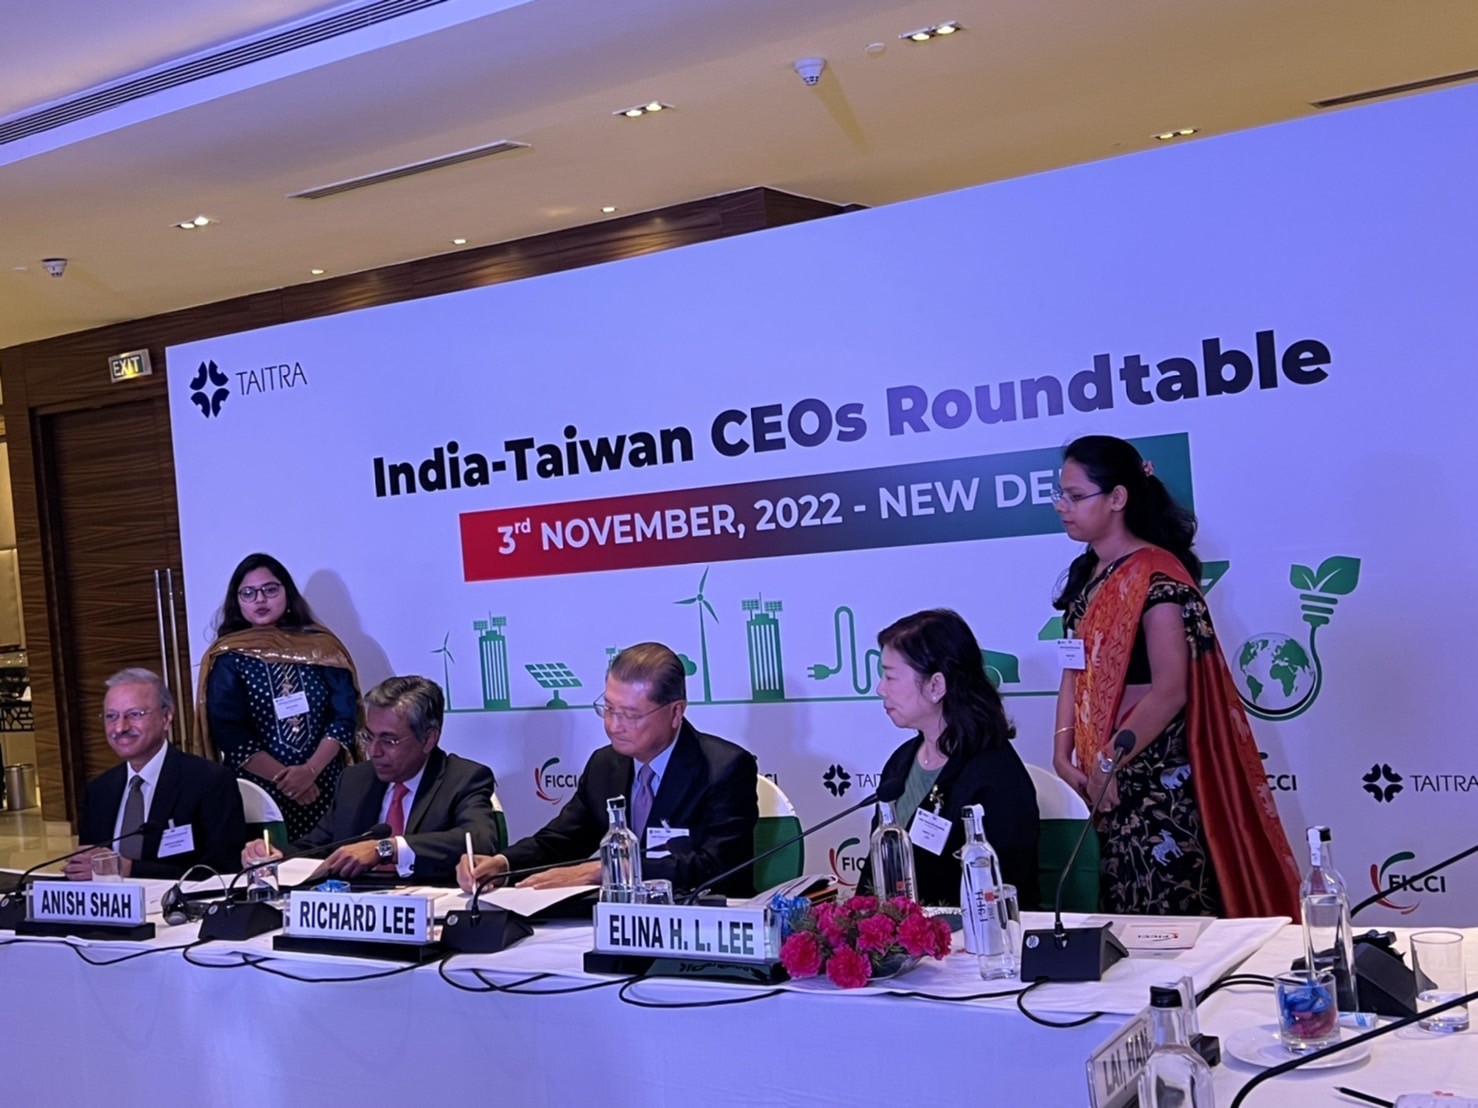 臺印度CEO圓桌論壇簽署共同聲明產業鏈結高峰會議成果圓滿